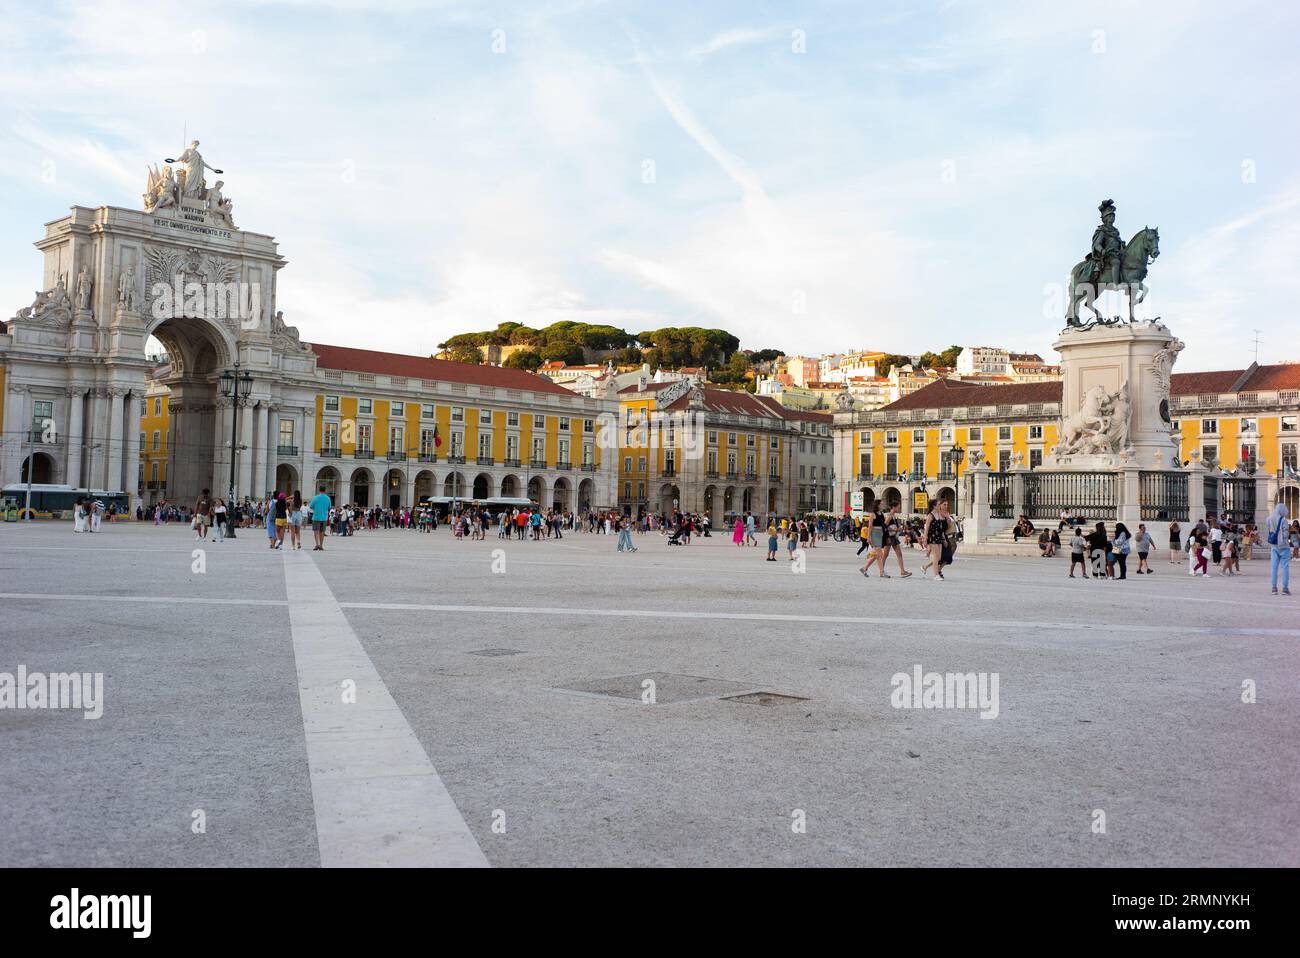 Piazza del commercio è stata il sito del Palazzo reale di Lisbona per più di 200 anni. E' una delle piazze piu' turistiche e importanti di Lisbona. A Foto Stock